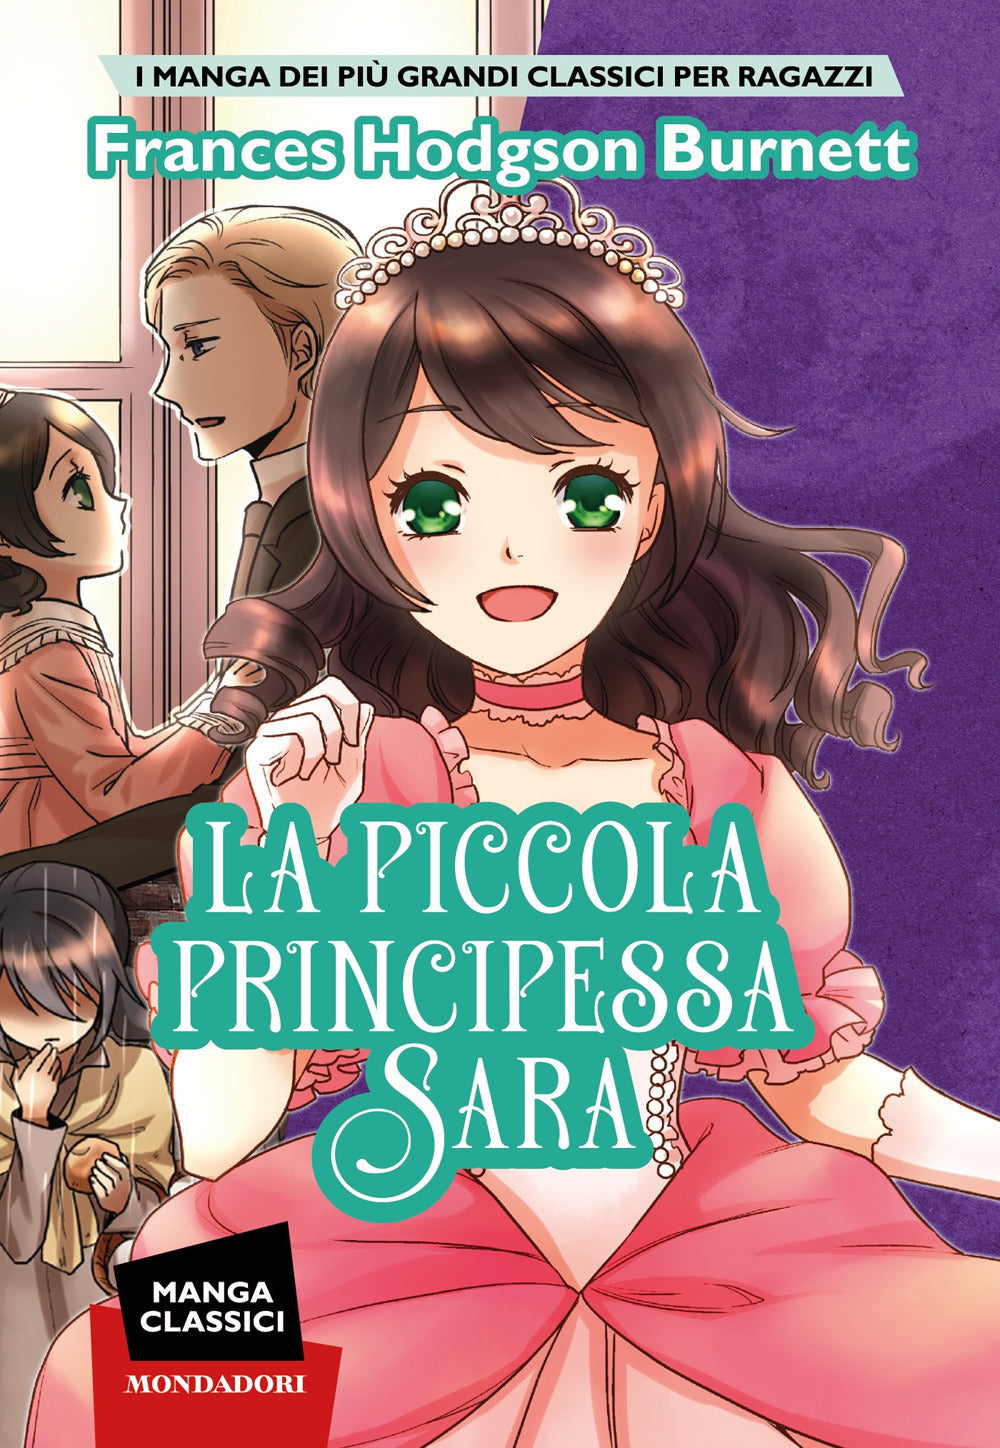 La piccola principessa Sara. Manga classici